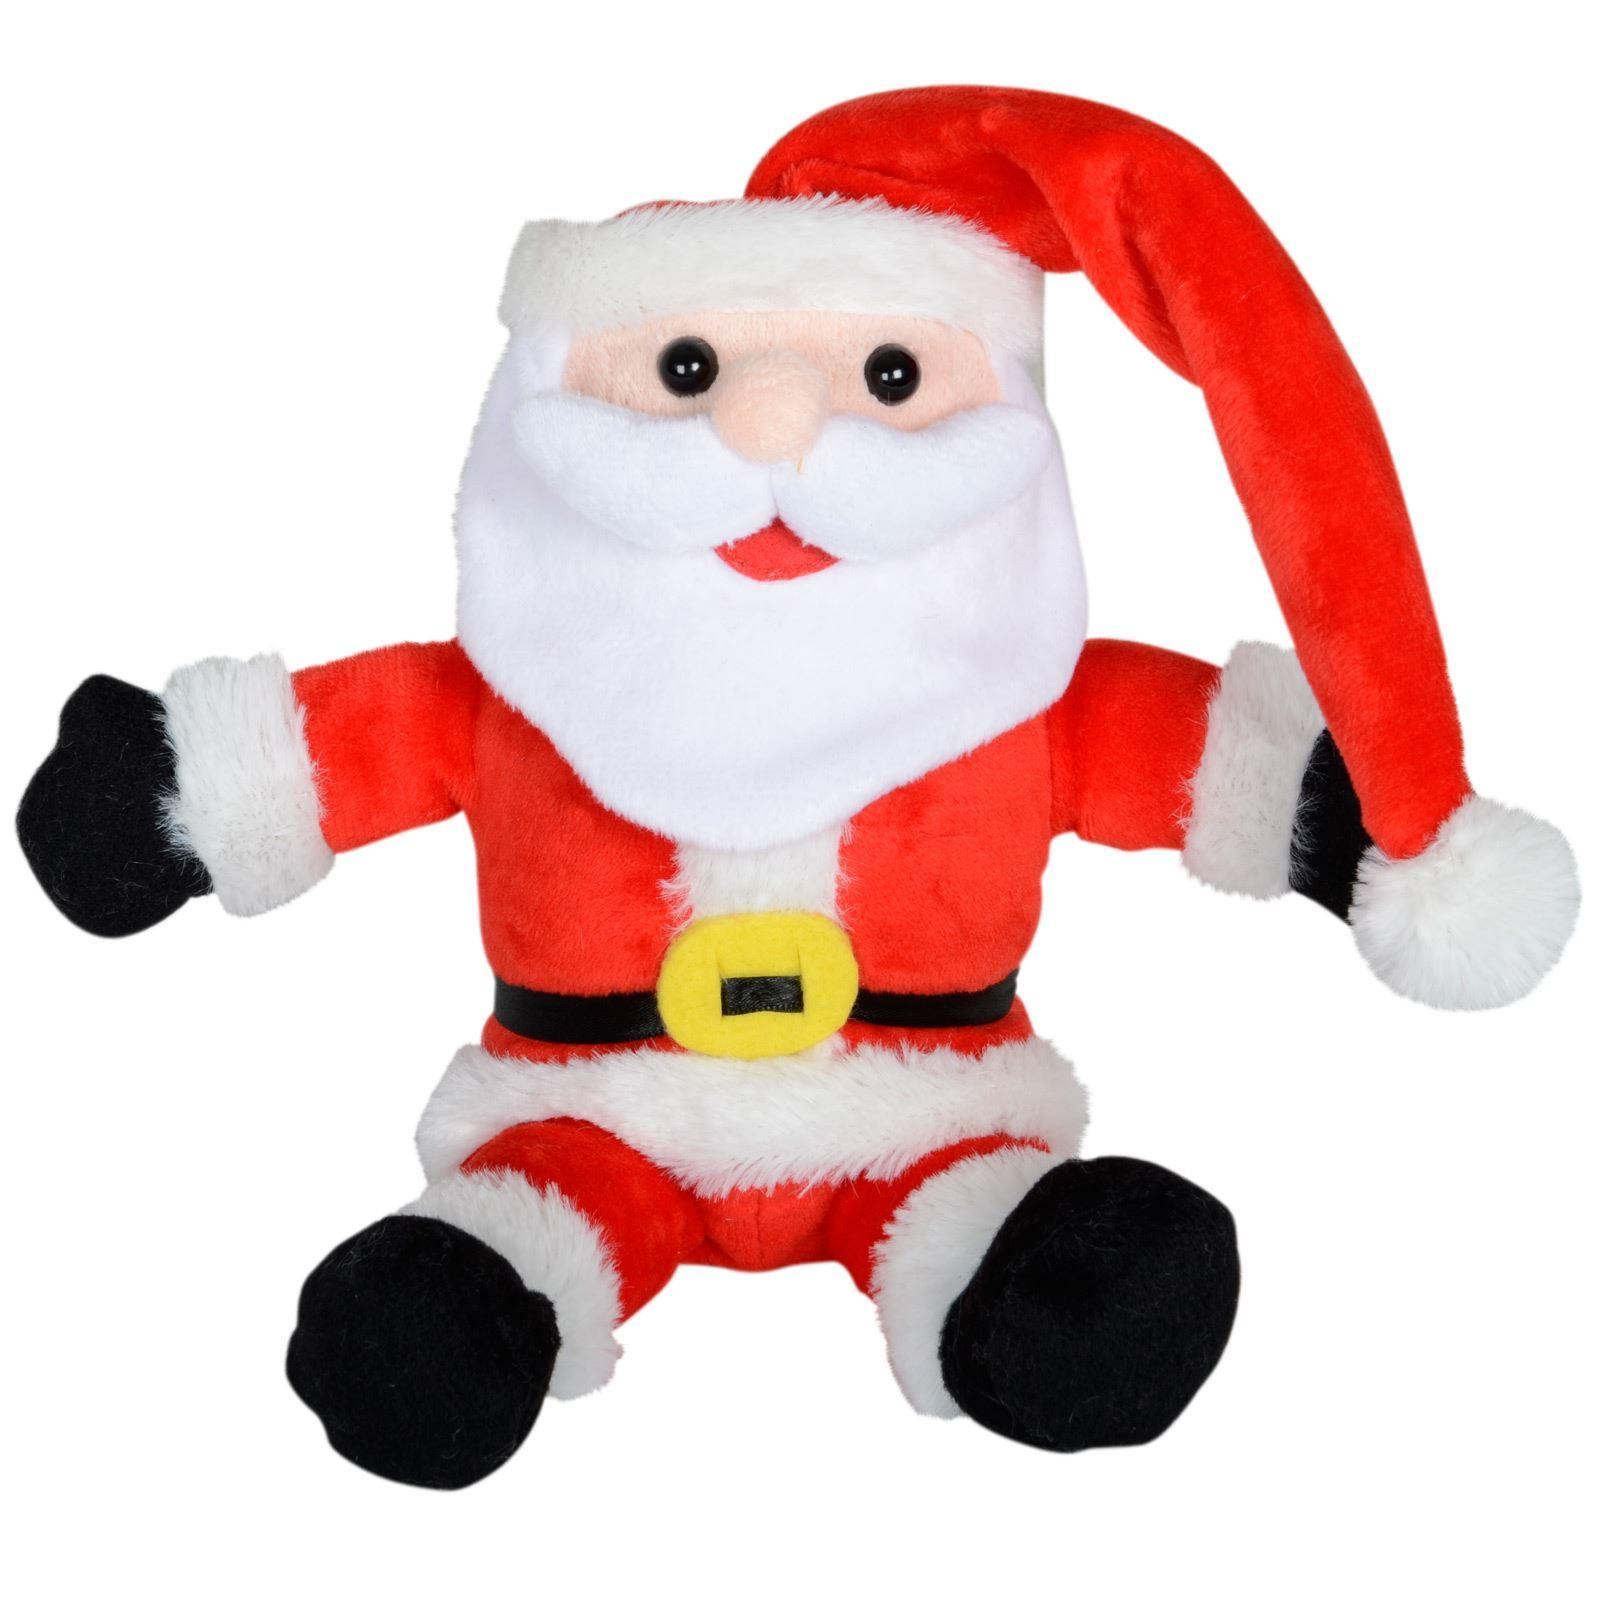 Mr Crimbo 12" Laughing Santa Animated Christmas Decoration - MrCrimbo.co.uk -XS3554 - -animated chirstmas decorations